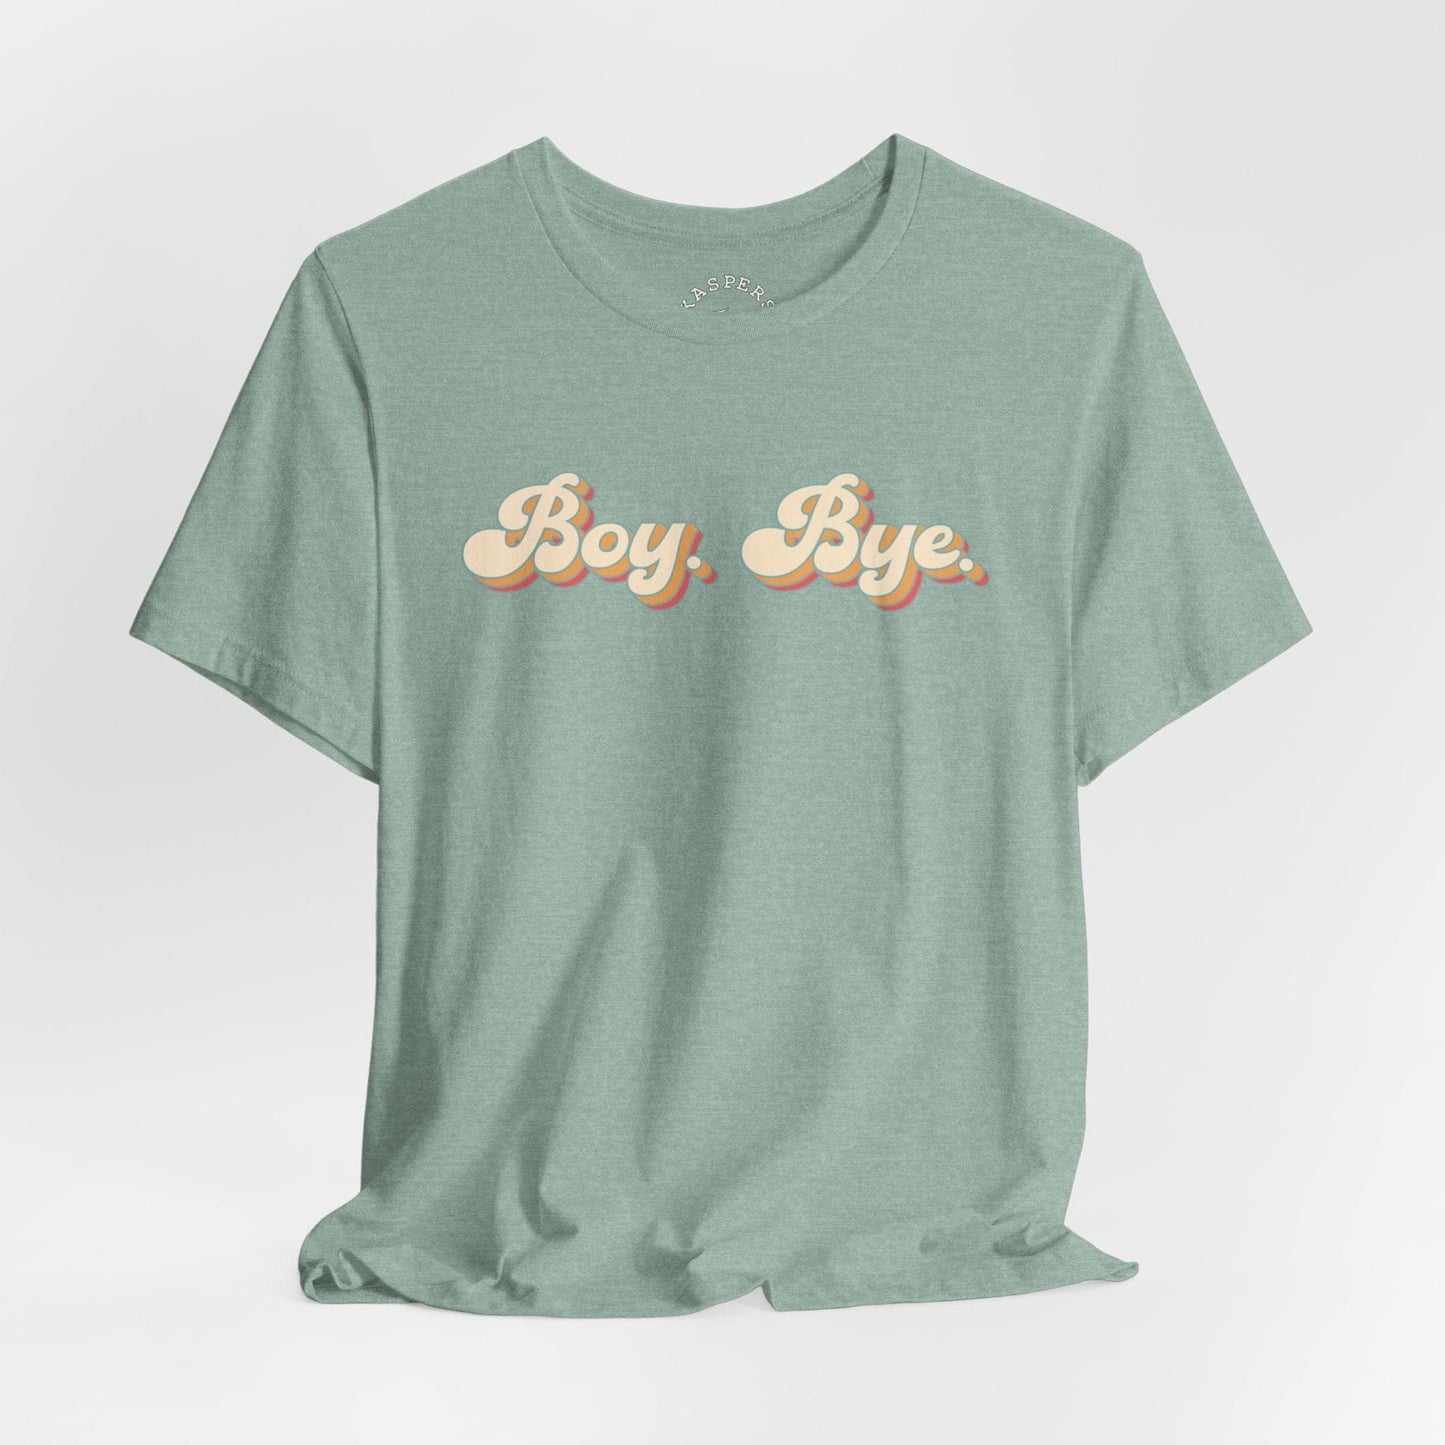 Boy. Bye. T-Shirt